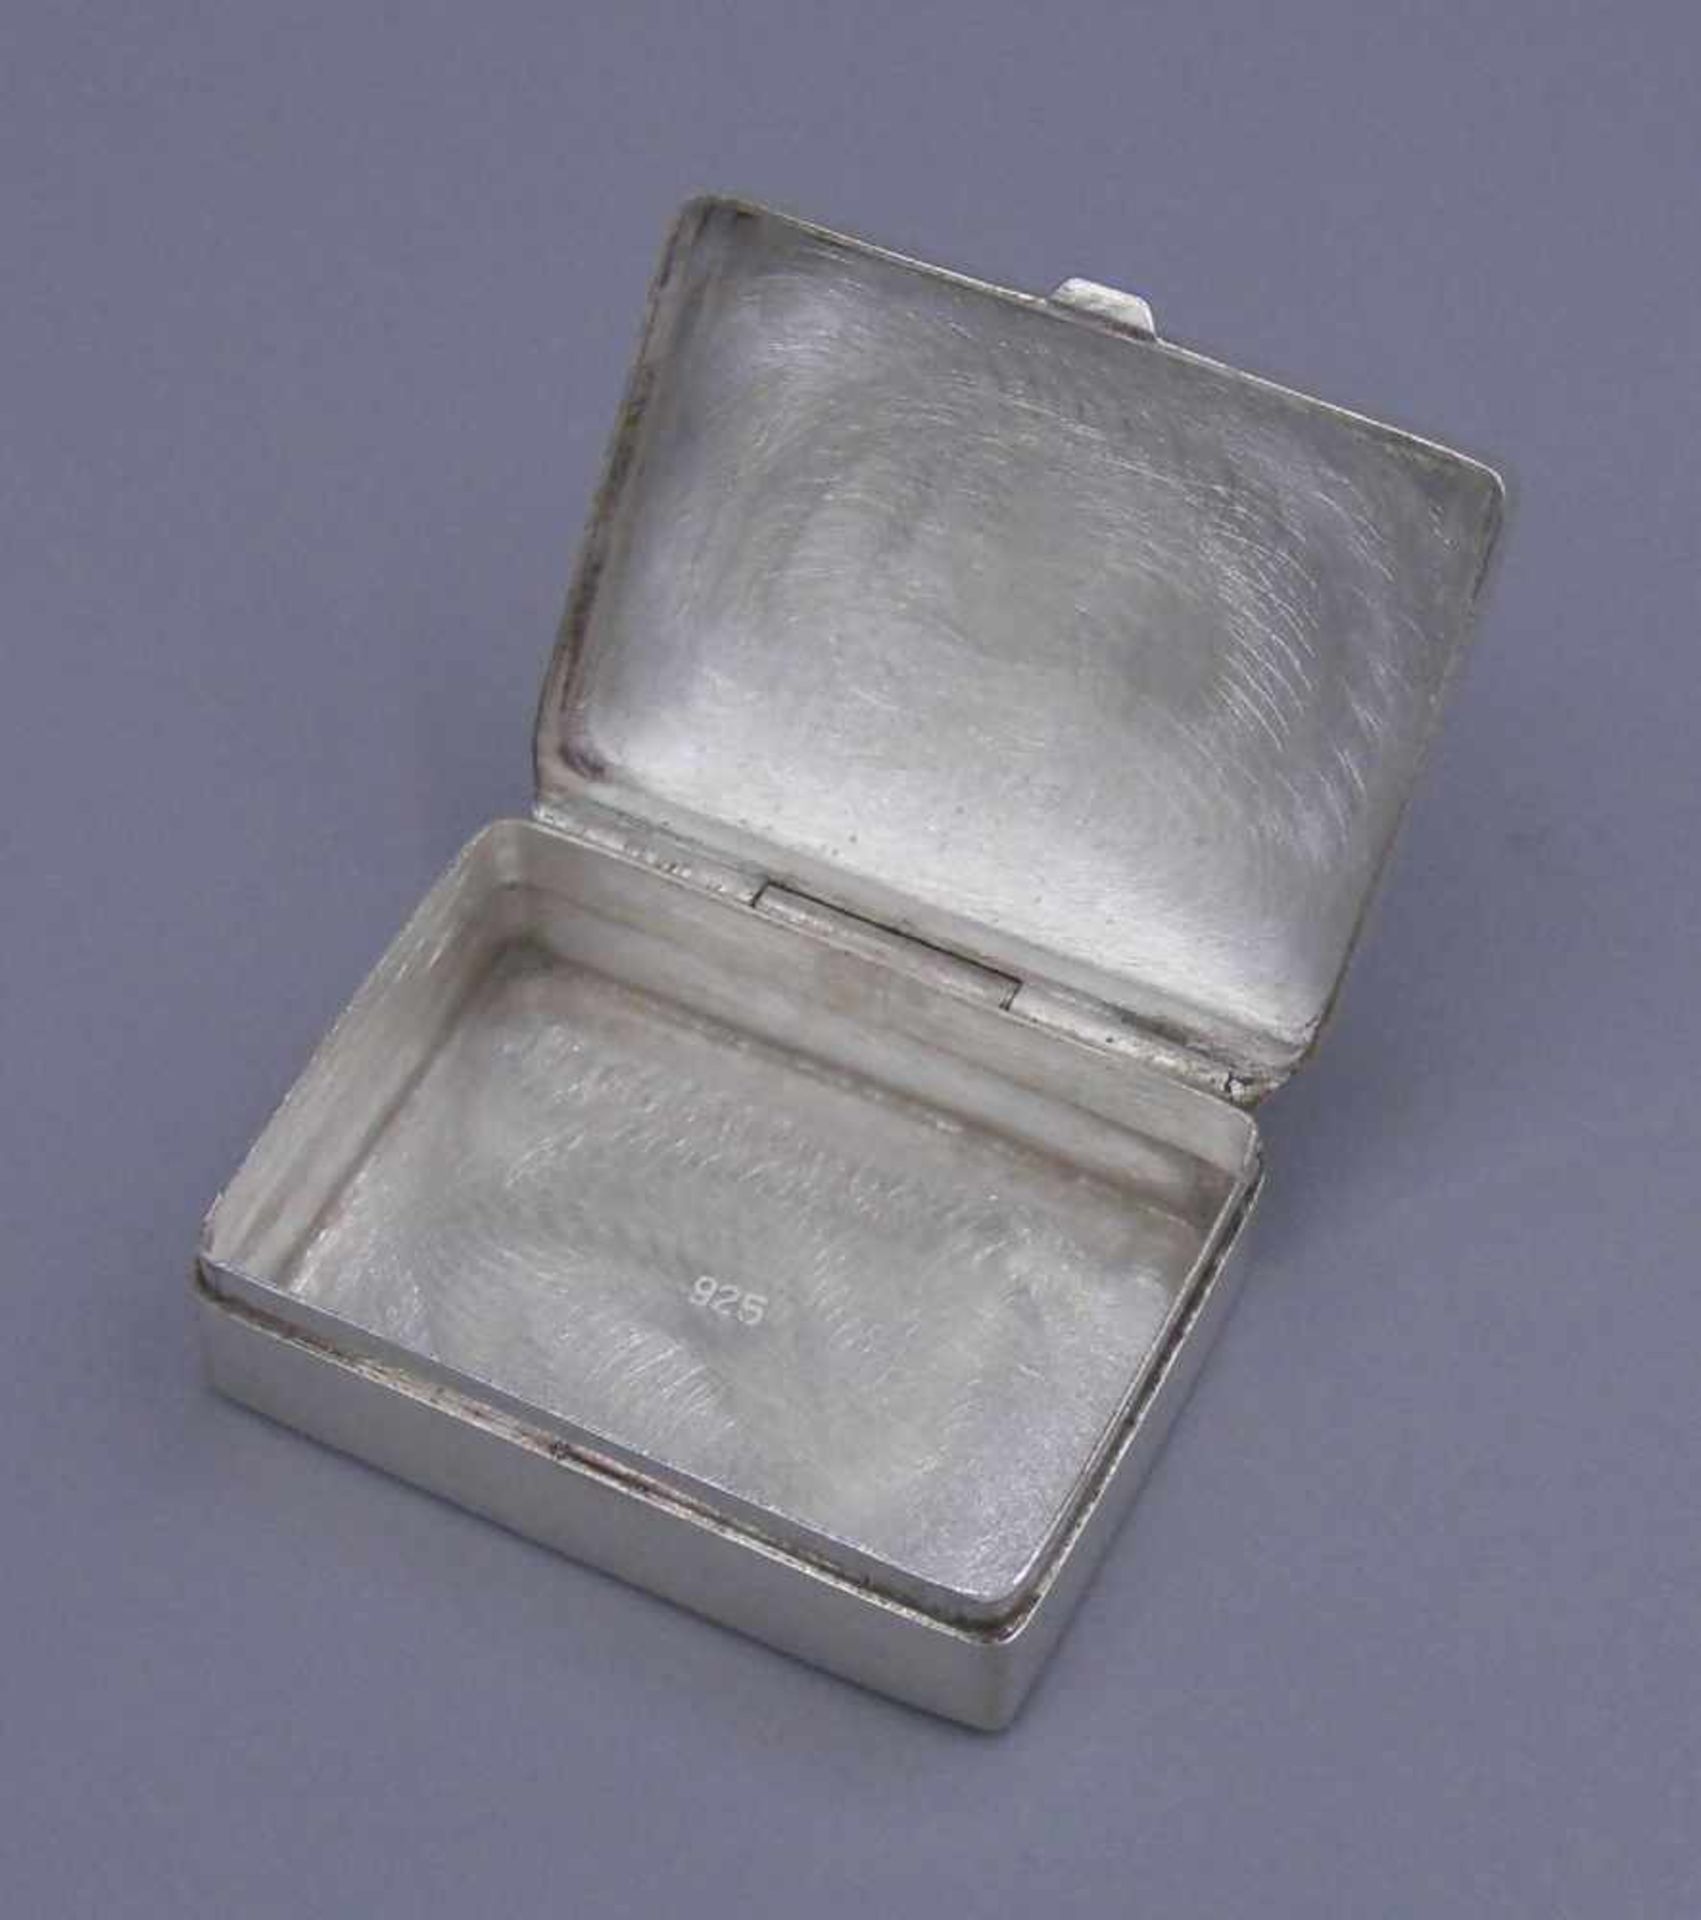 PILLENDOSE / DECKELDOSE / SCHATULLE / pillbox, 925er Silber (gepunzt mit Feingehaltsangabe, 14 g). - Bild 4 aus 4